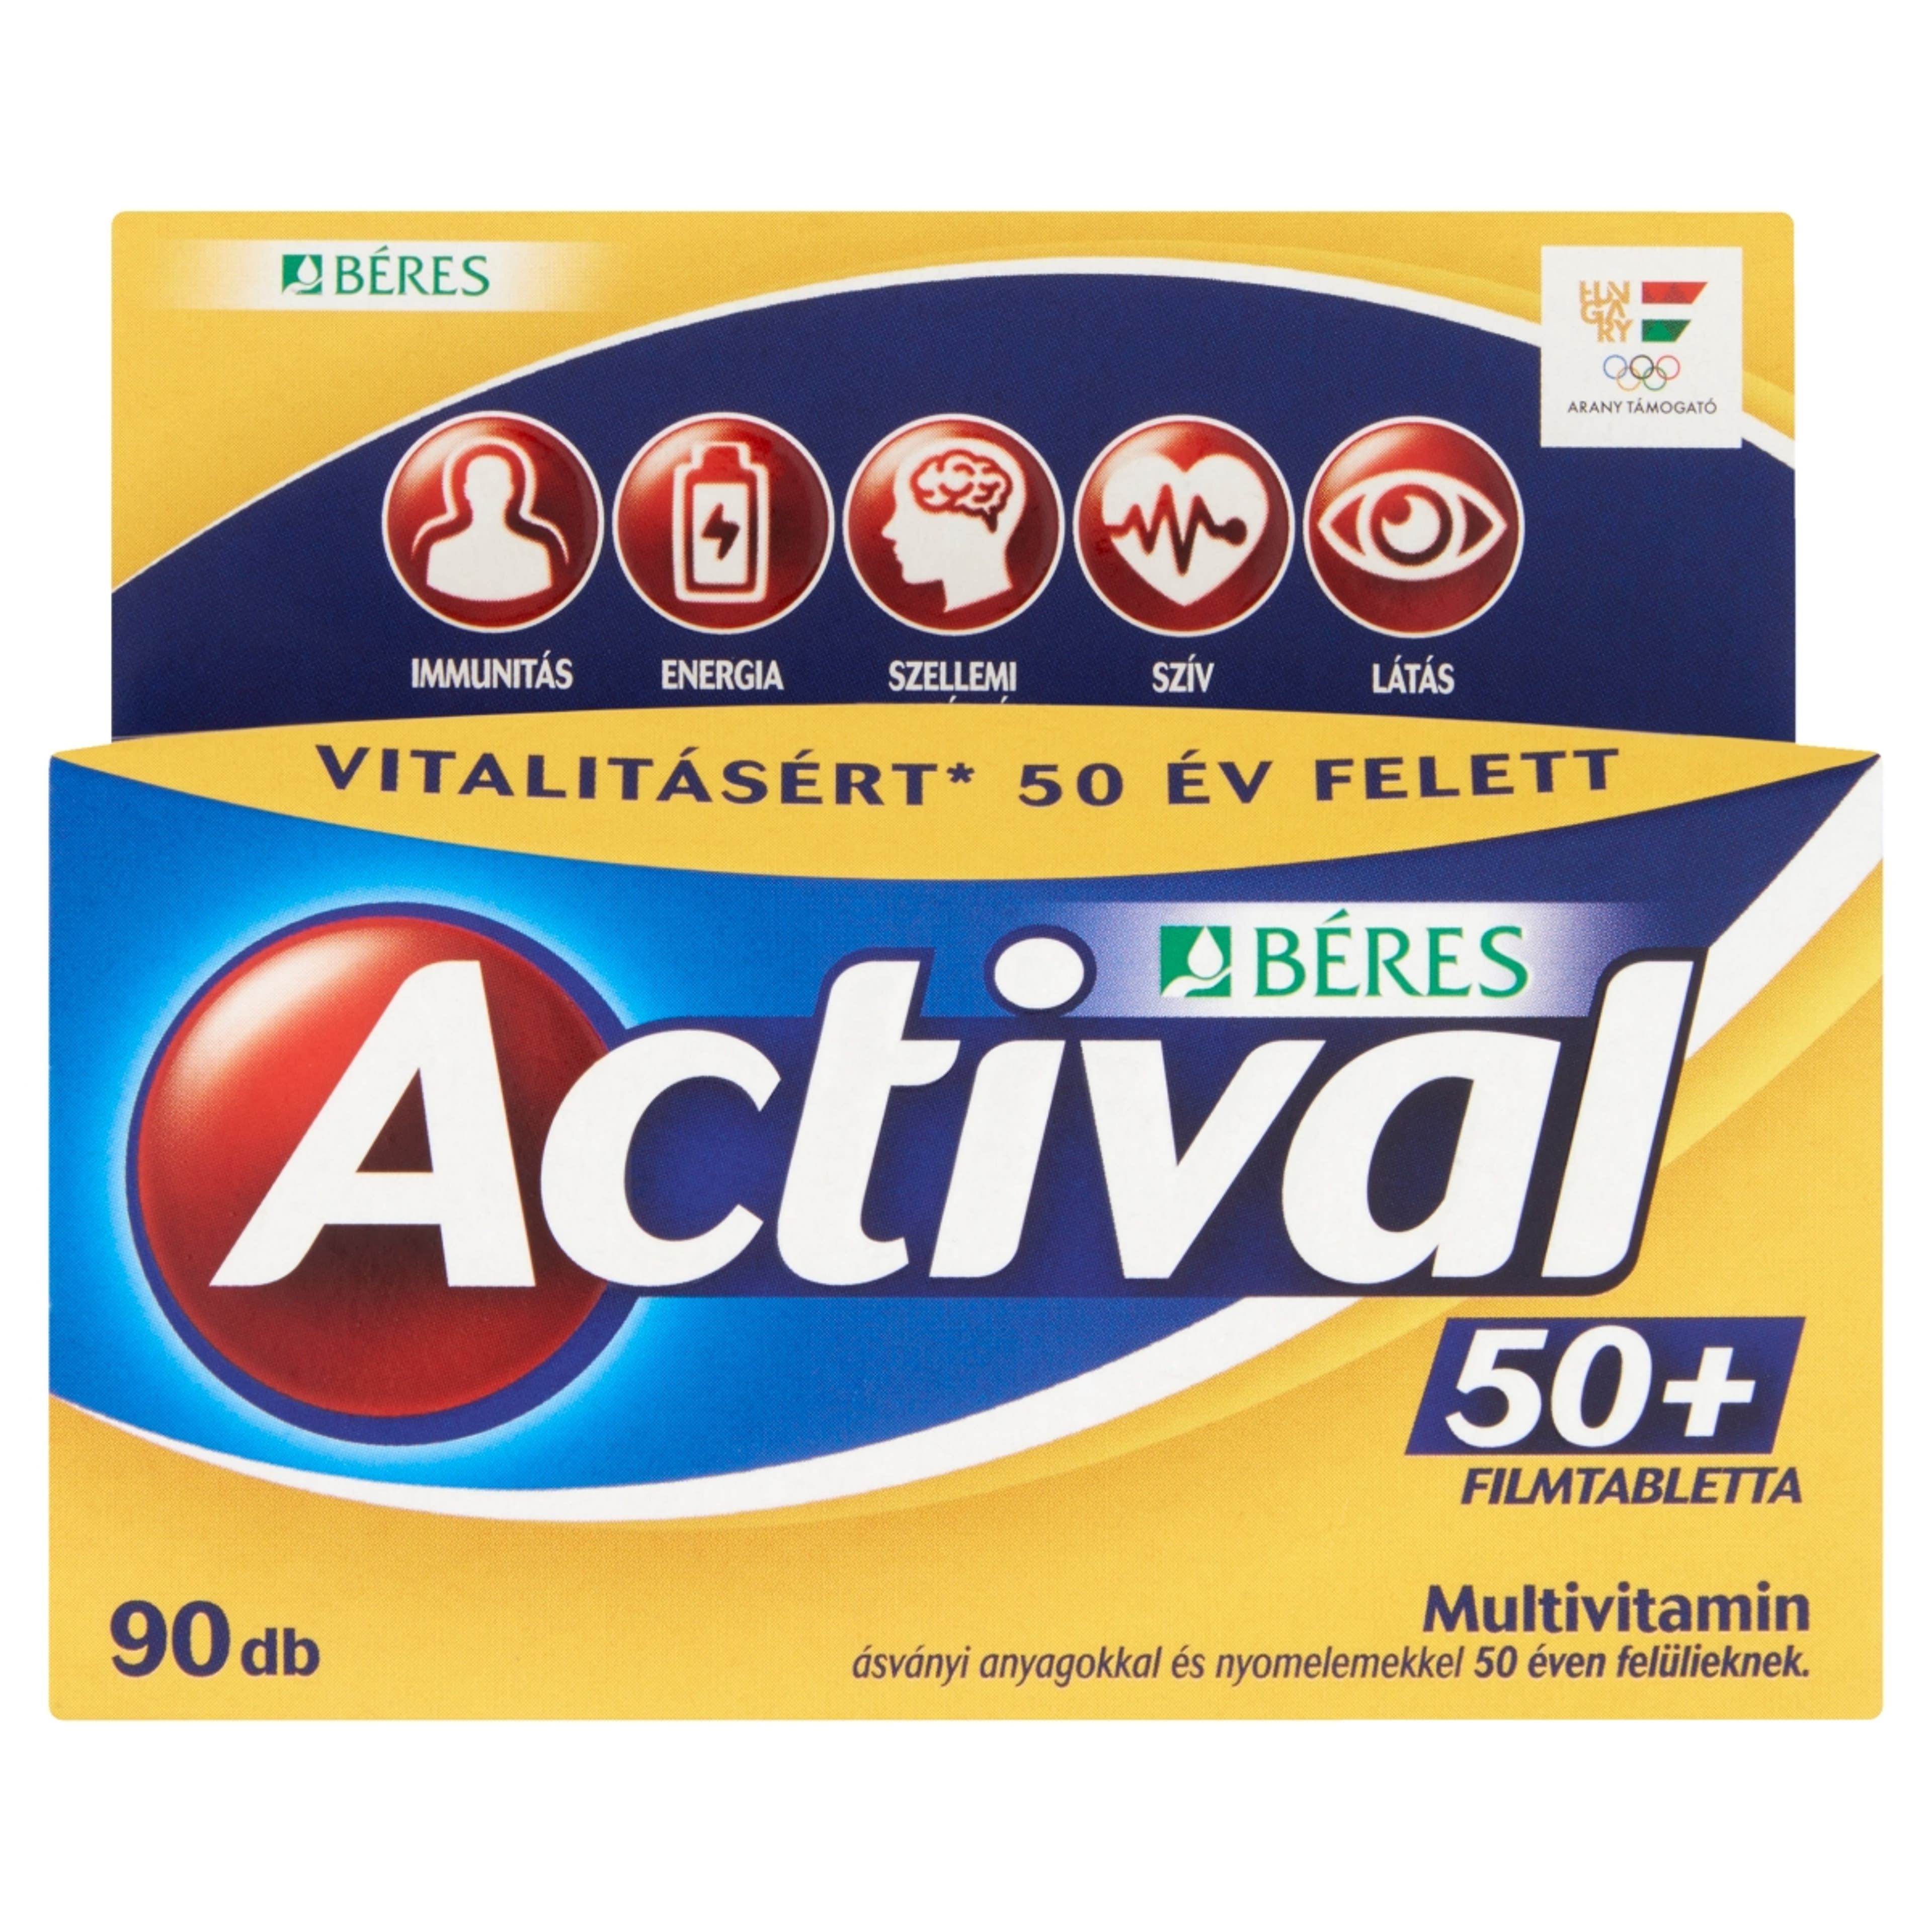 Actival 50+ filmtabletta - 90 db-2